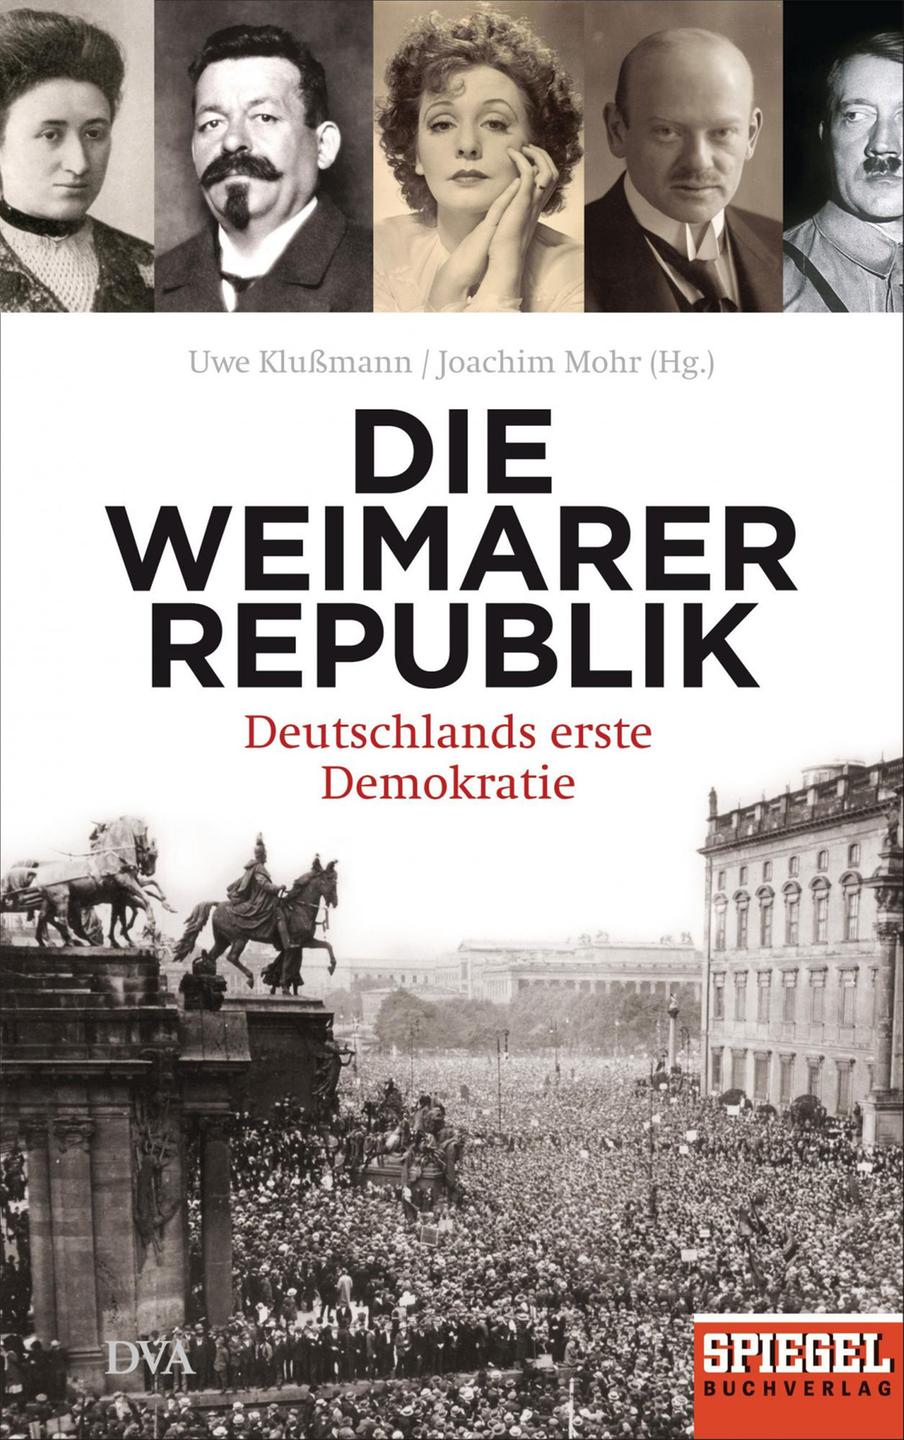 Cover - Uwe Klußmann, Joachim Mohr (Hrsg.): "Die Weimarer Republik. Deutschlands erste Demokratie"